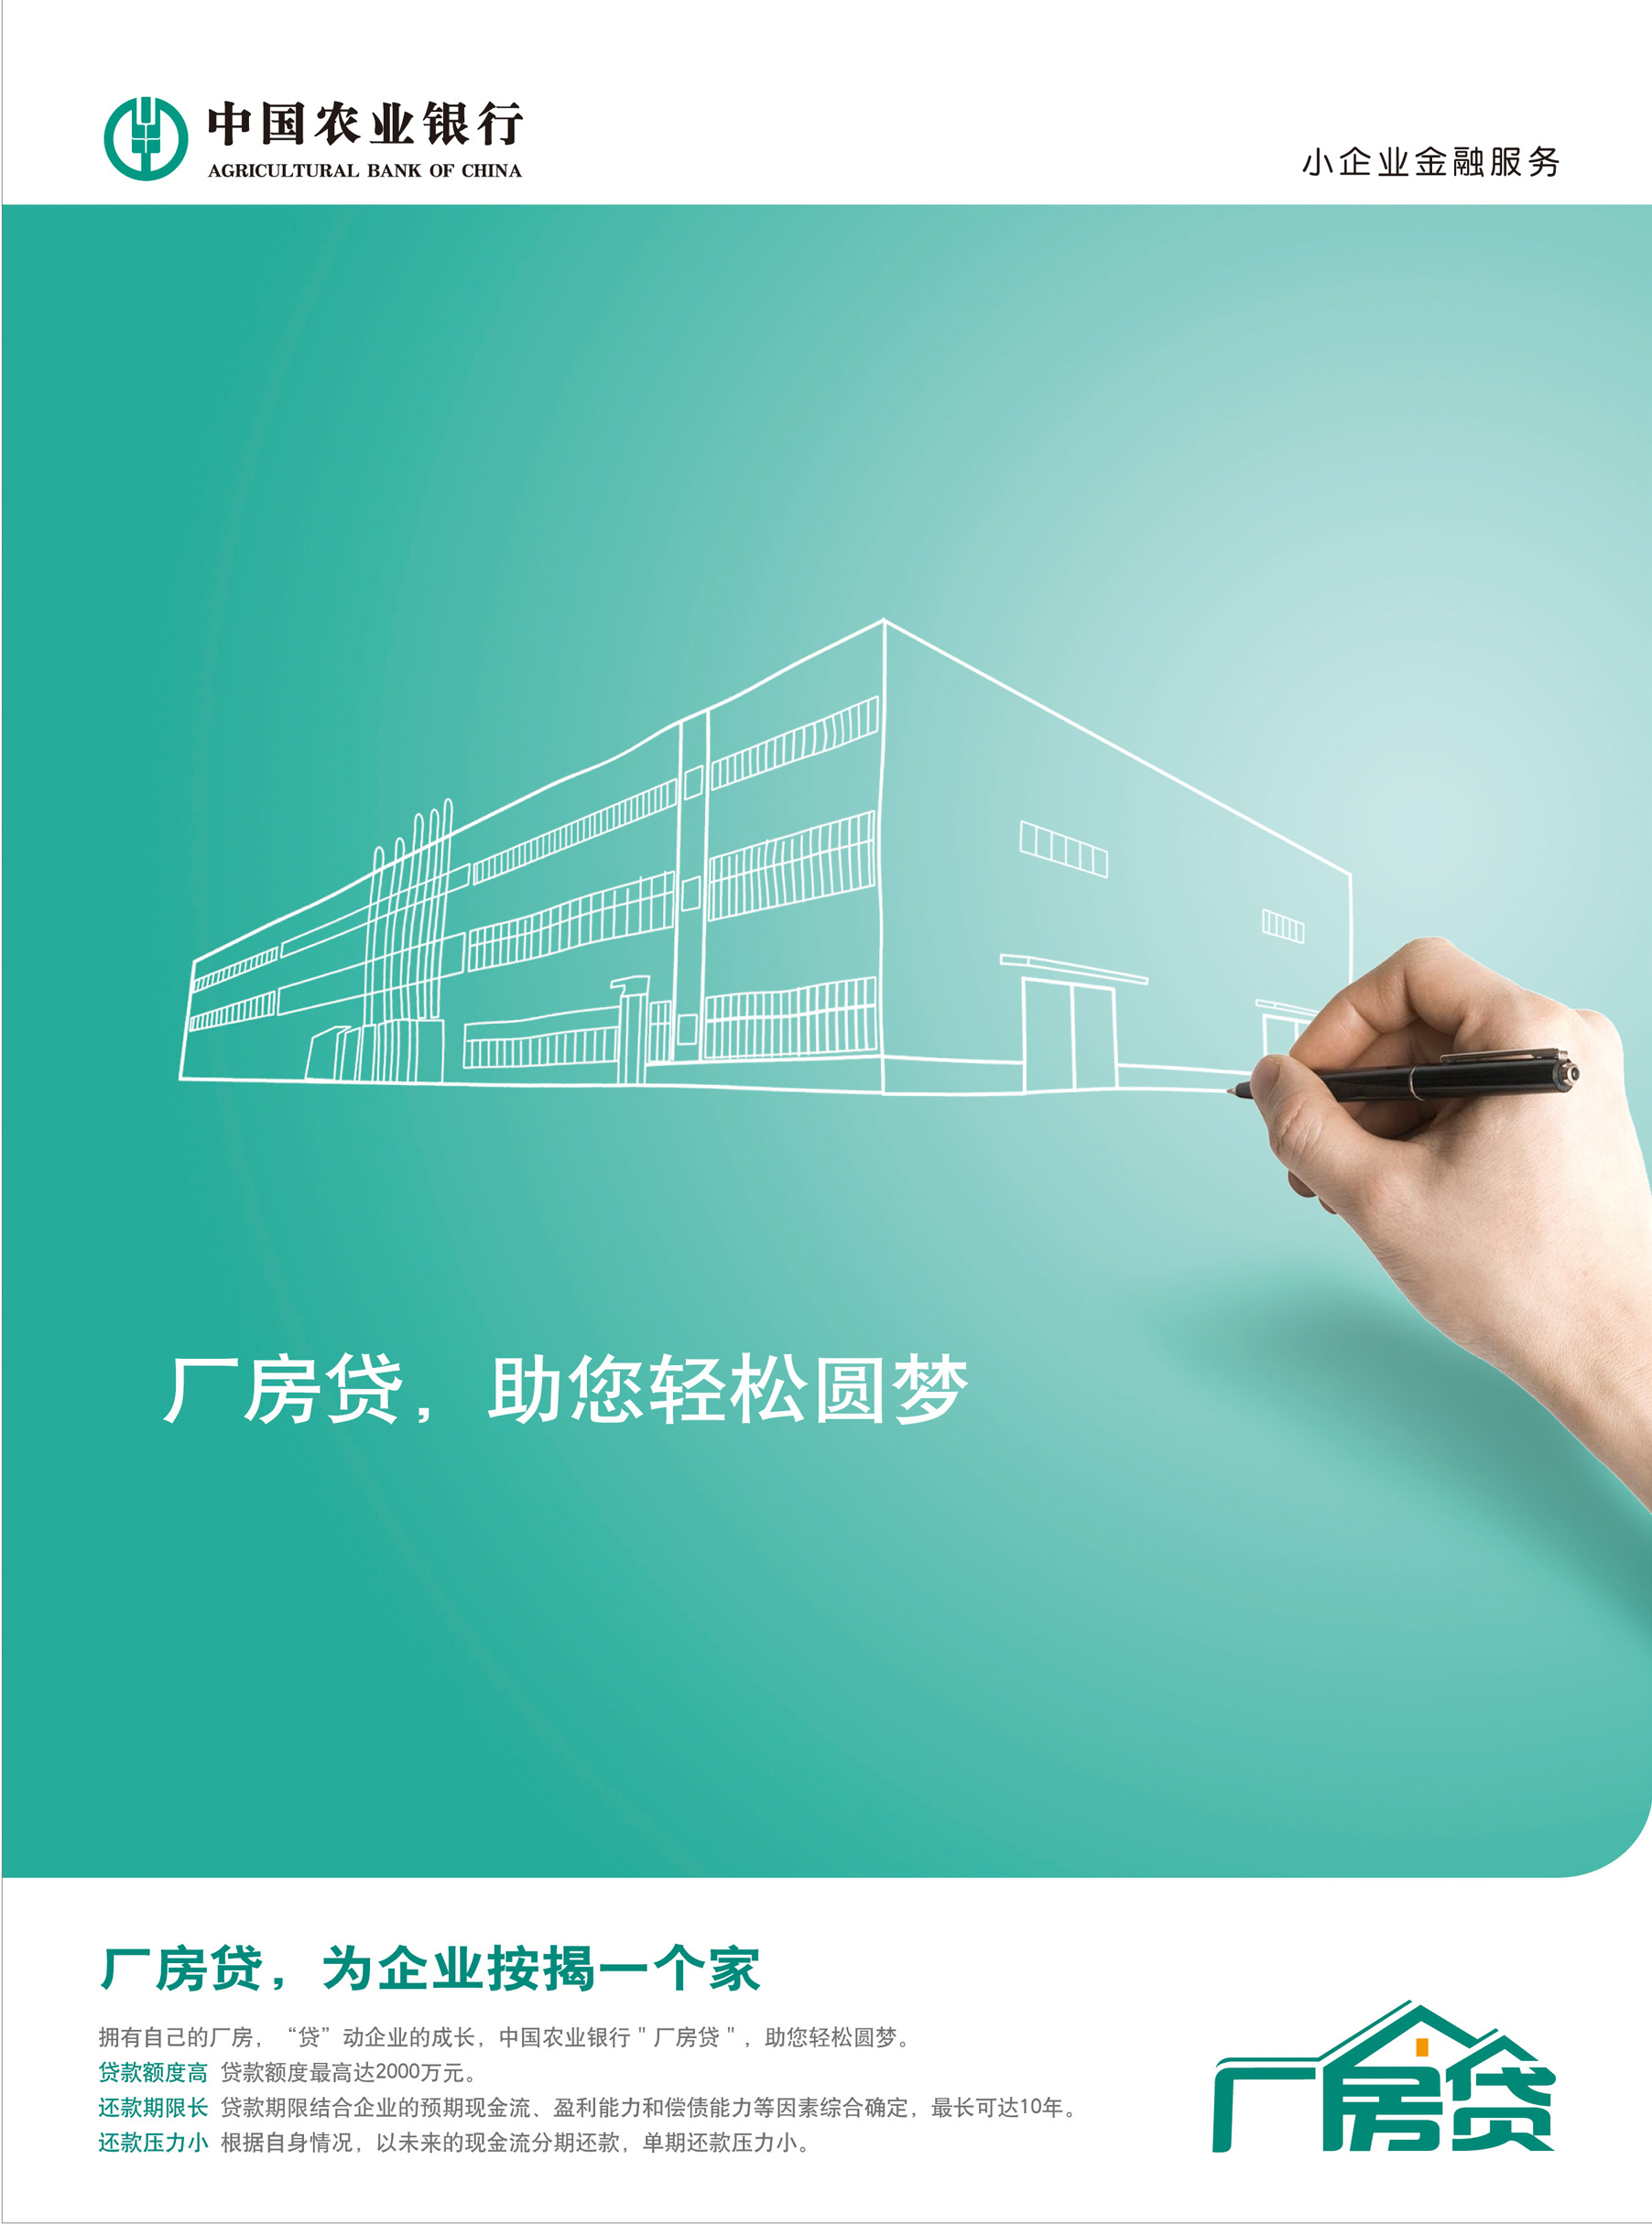 中国农业银行宣传海报图片